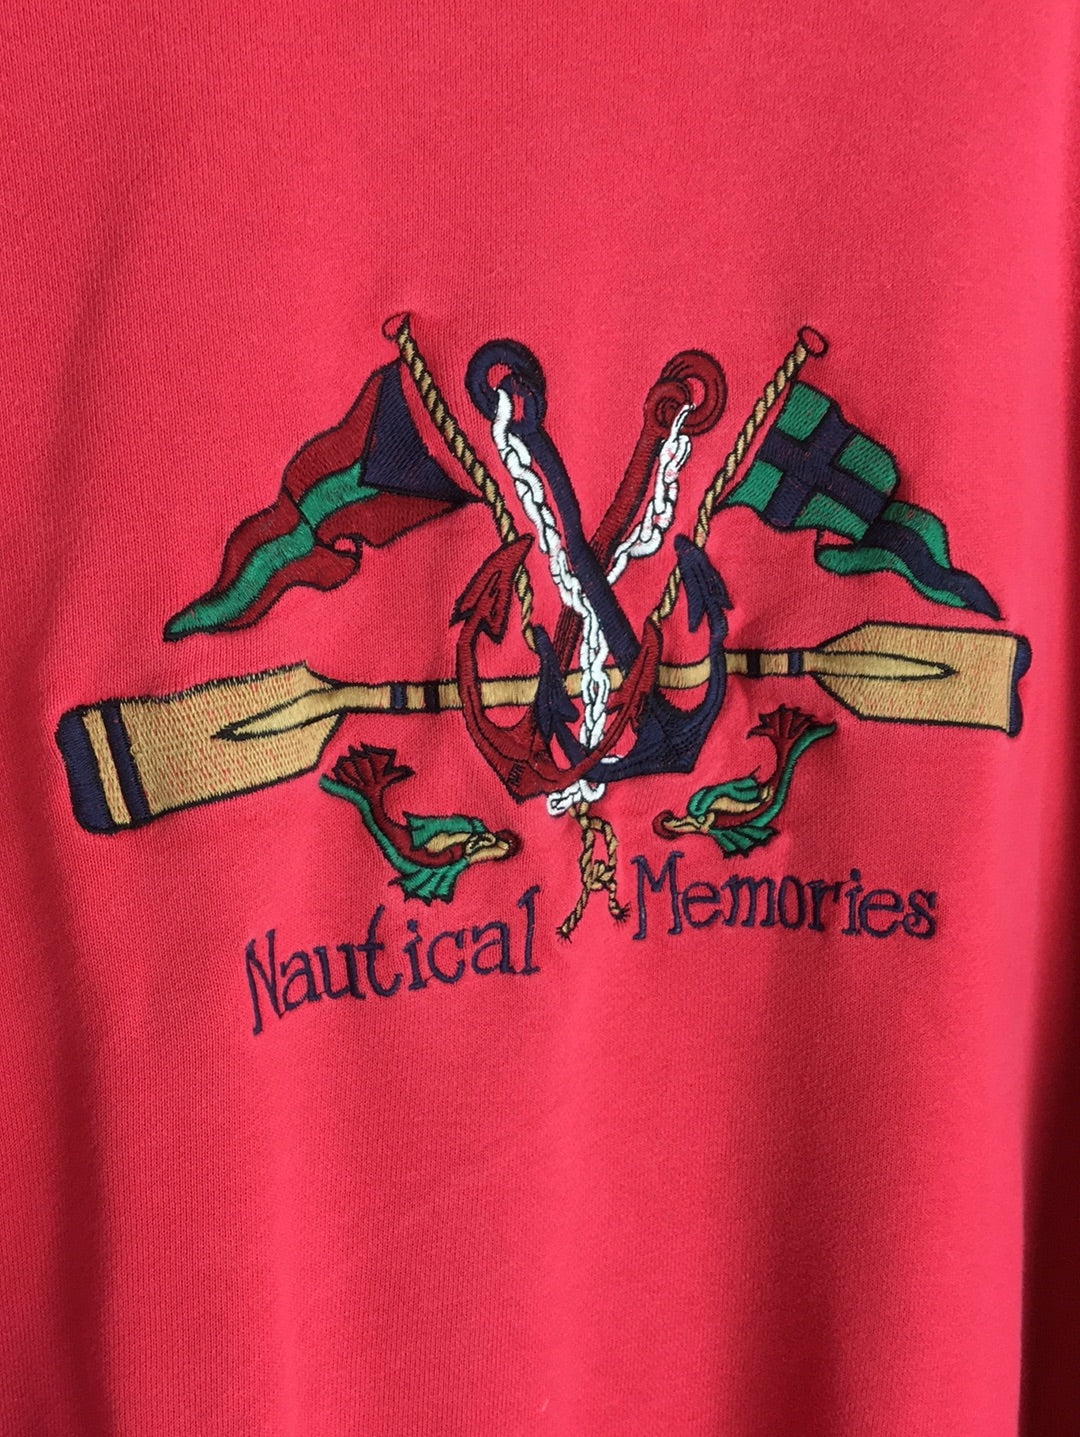 Nautical Memories Sweater (L)